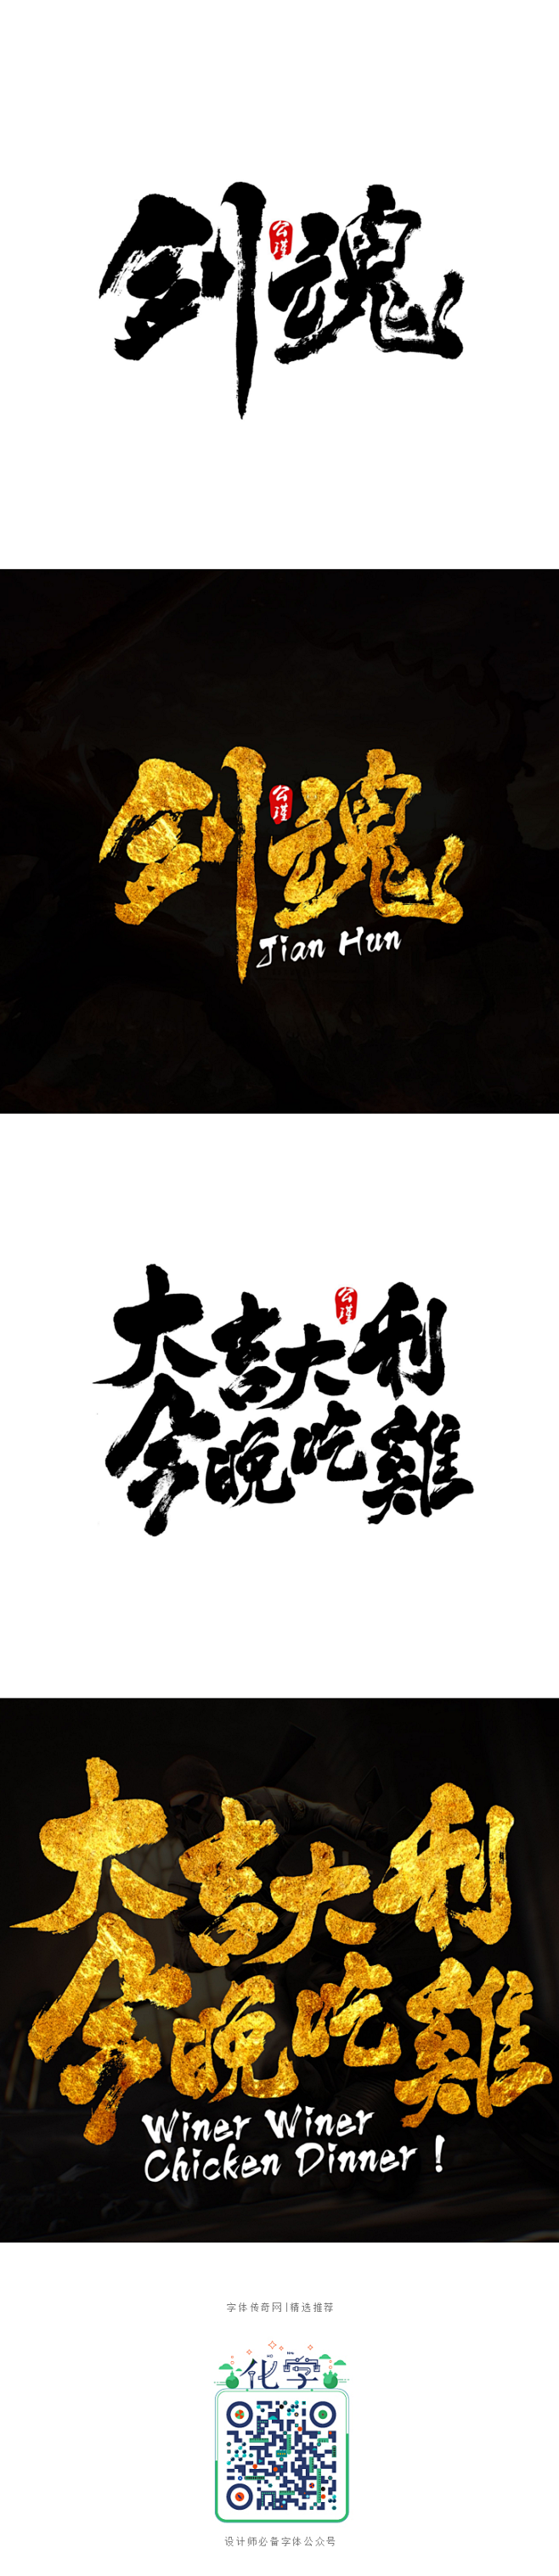 书法小品-字体传奇网-中国首个字体品牌设...